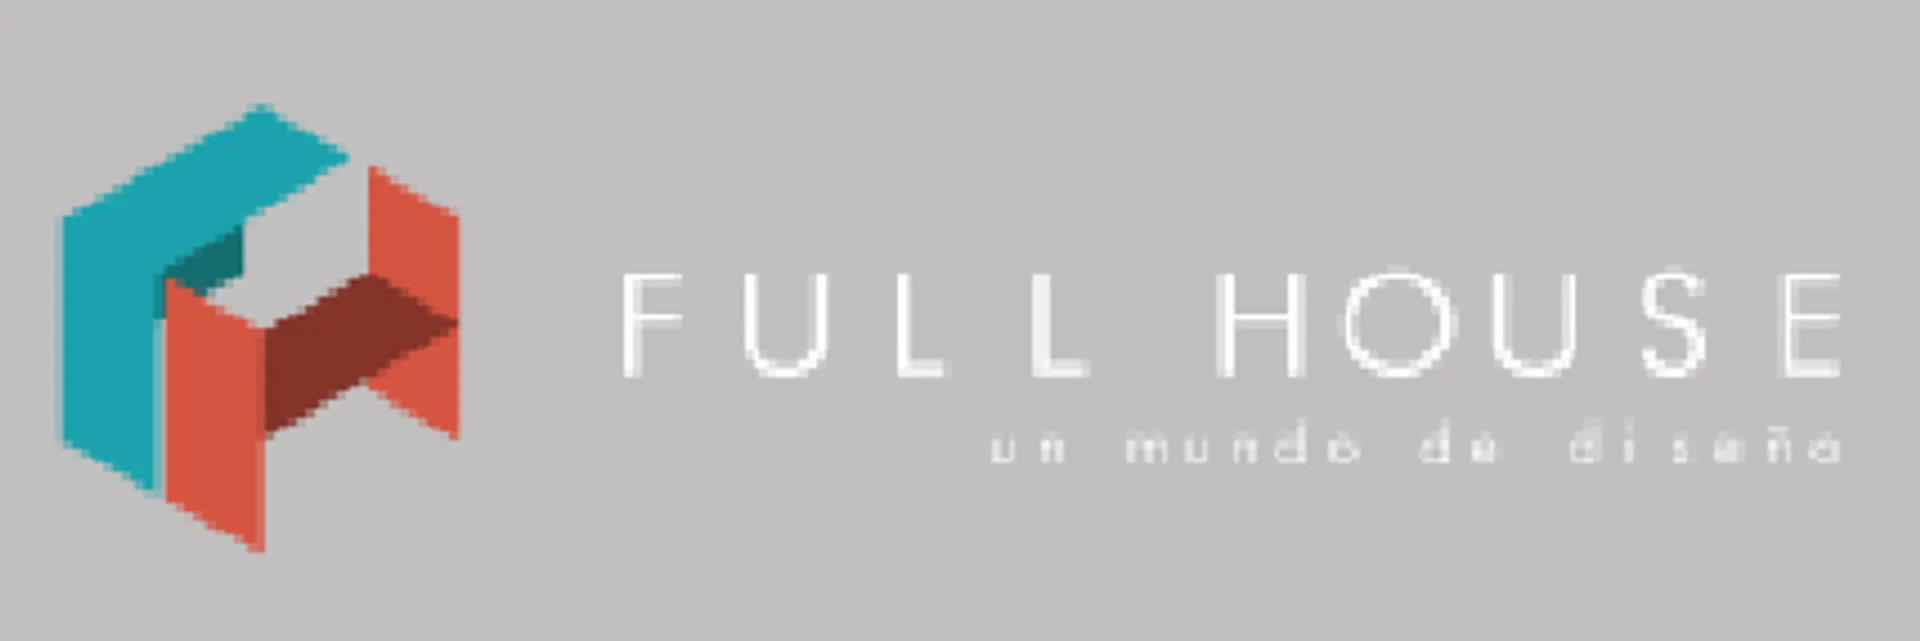 FULL HOUSE logo de catálogo